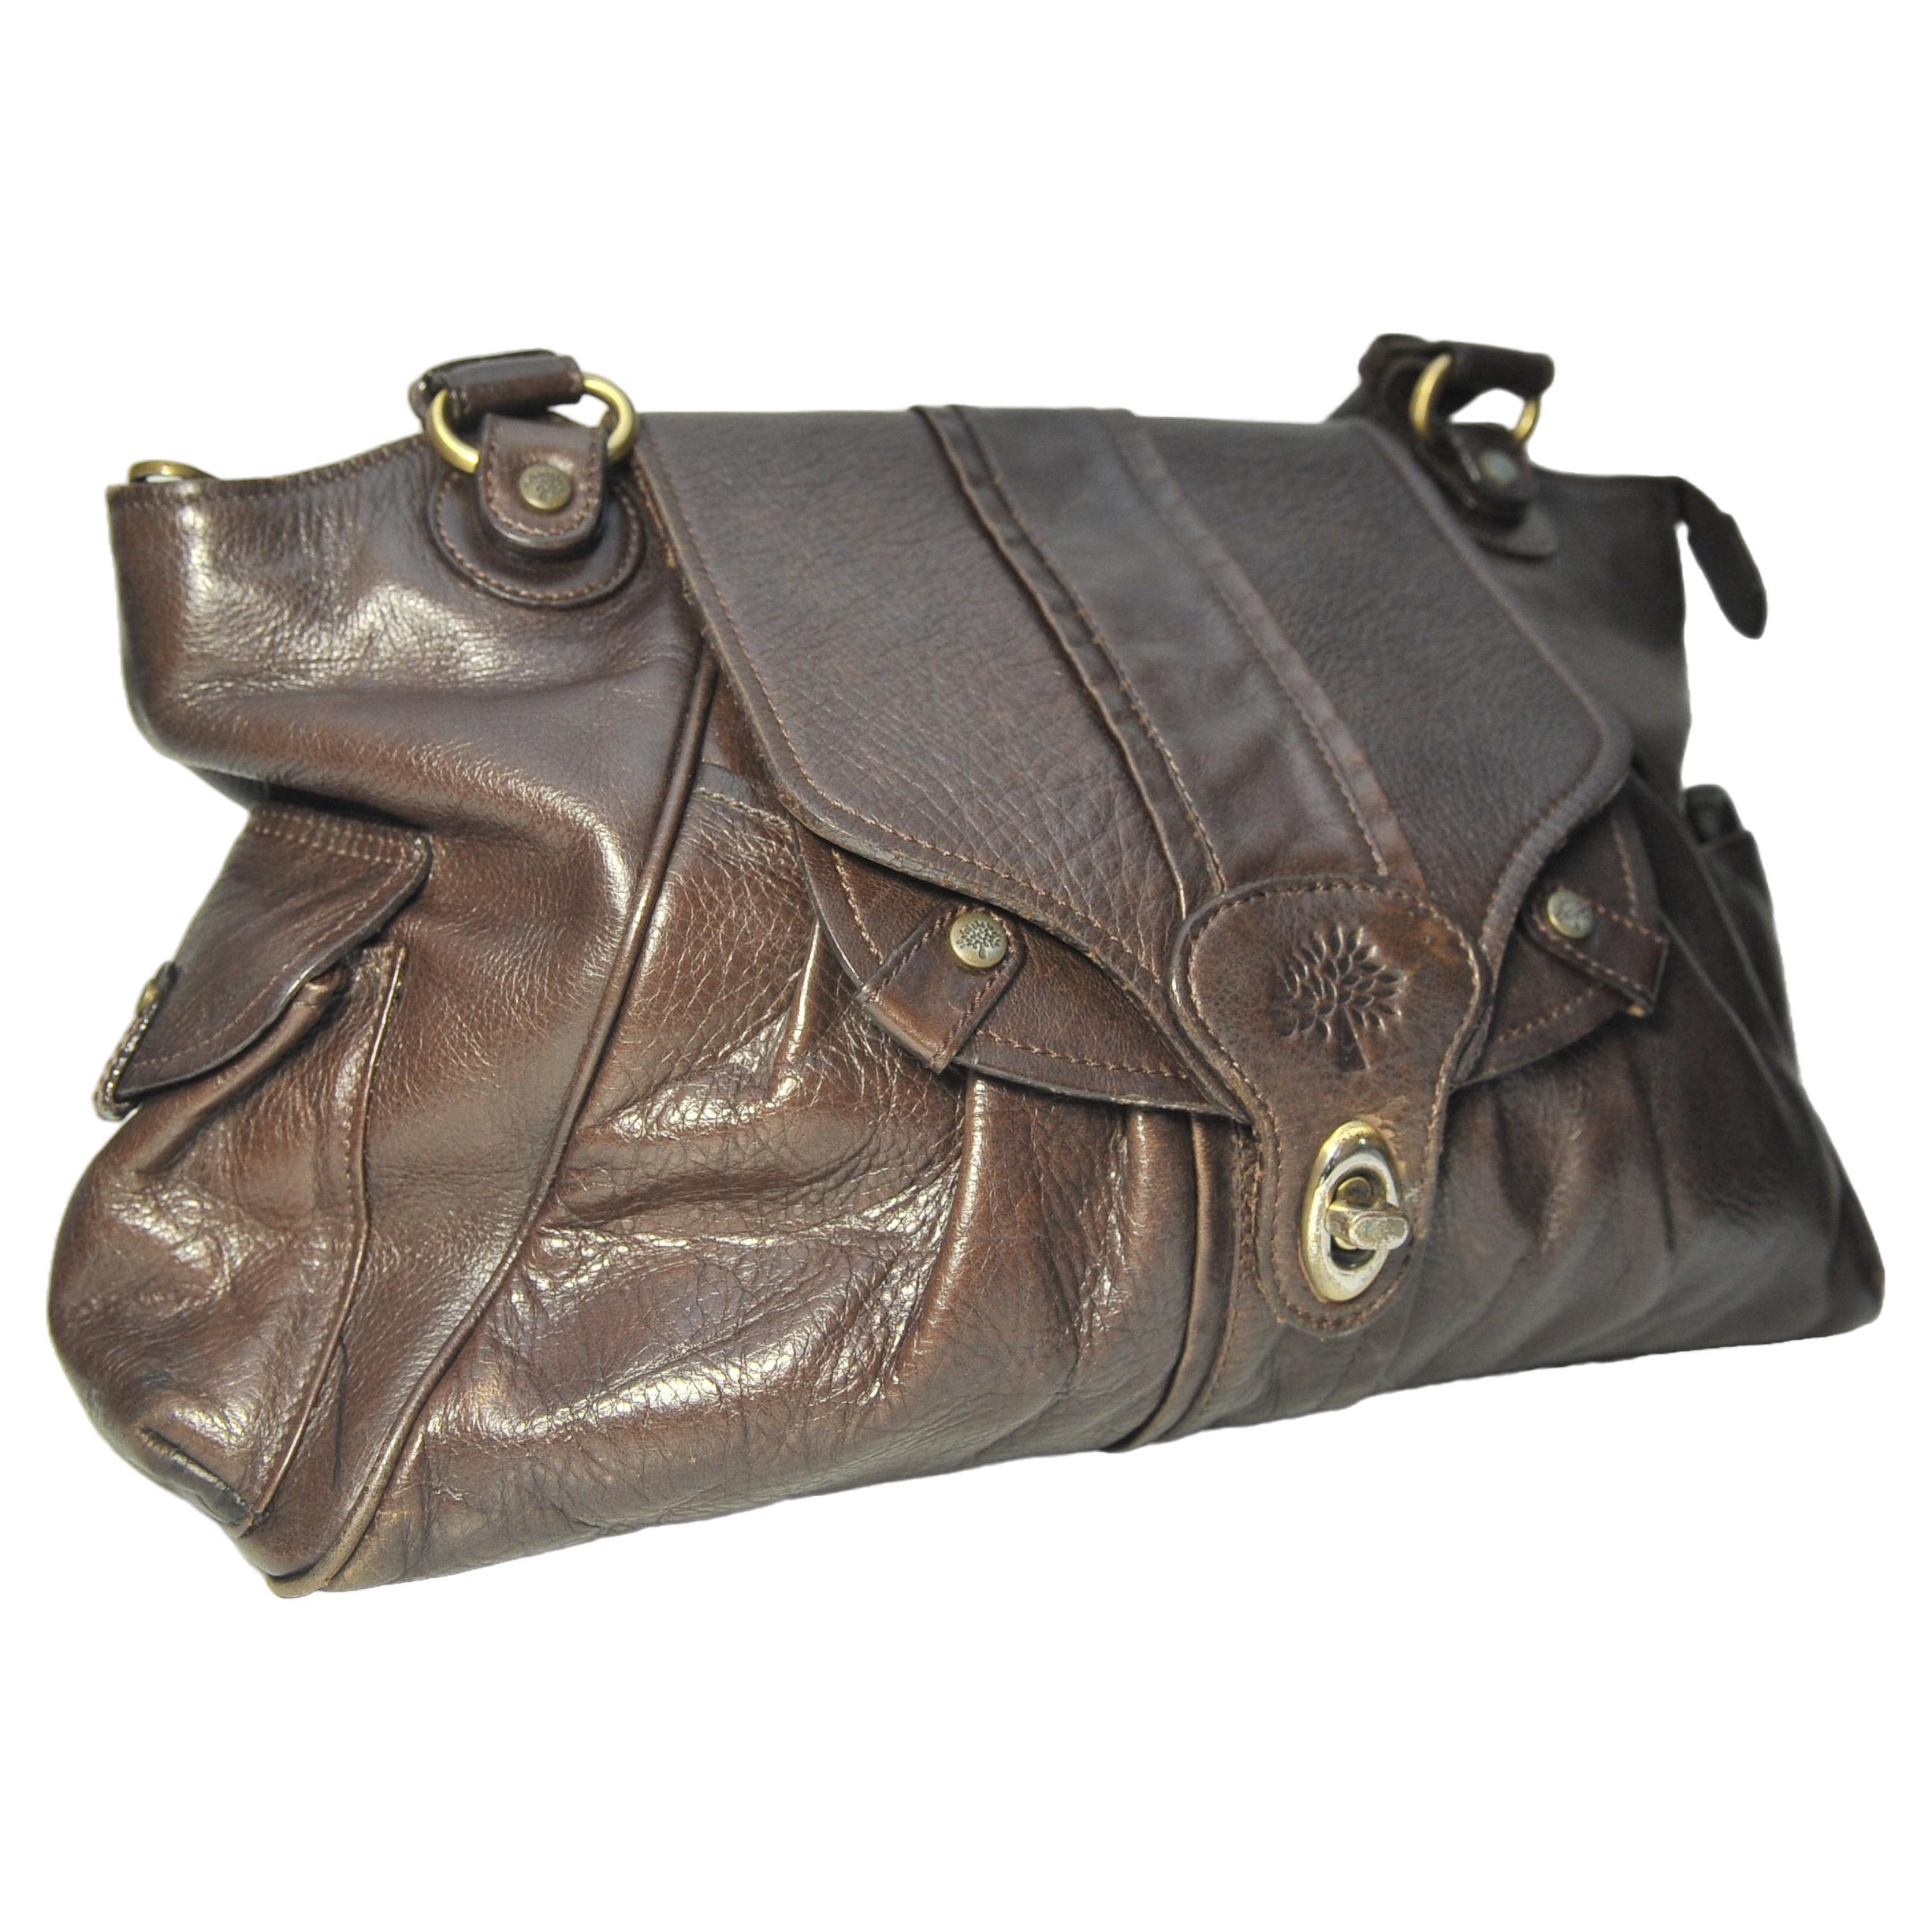 Mulberry Brown Leder Damen Handtasche mit großen Loop Griffe.

Komplett mit original kastanienbraunem Mulberry-Staubbeutel